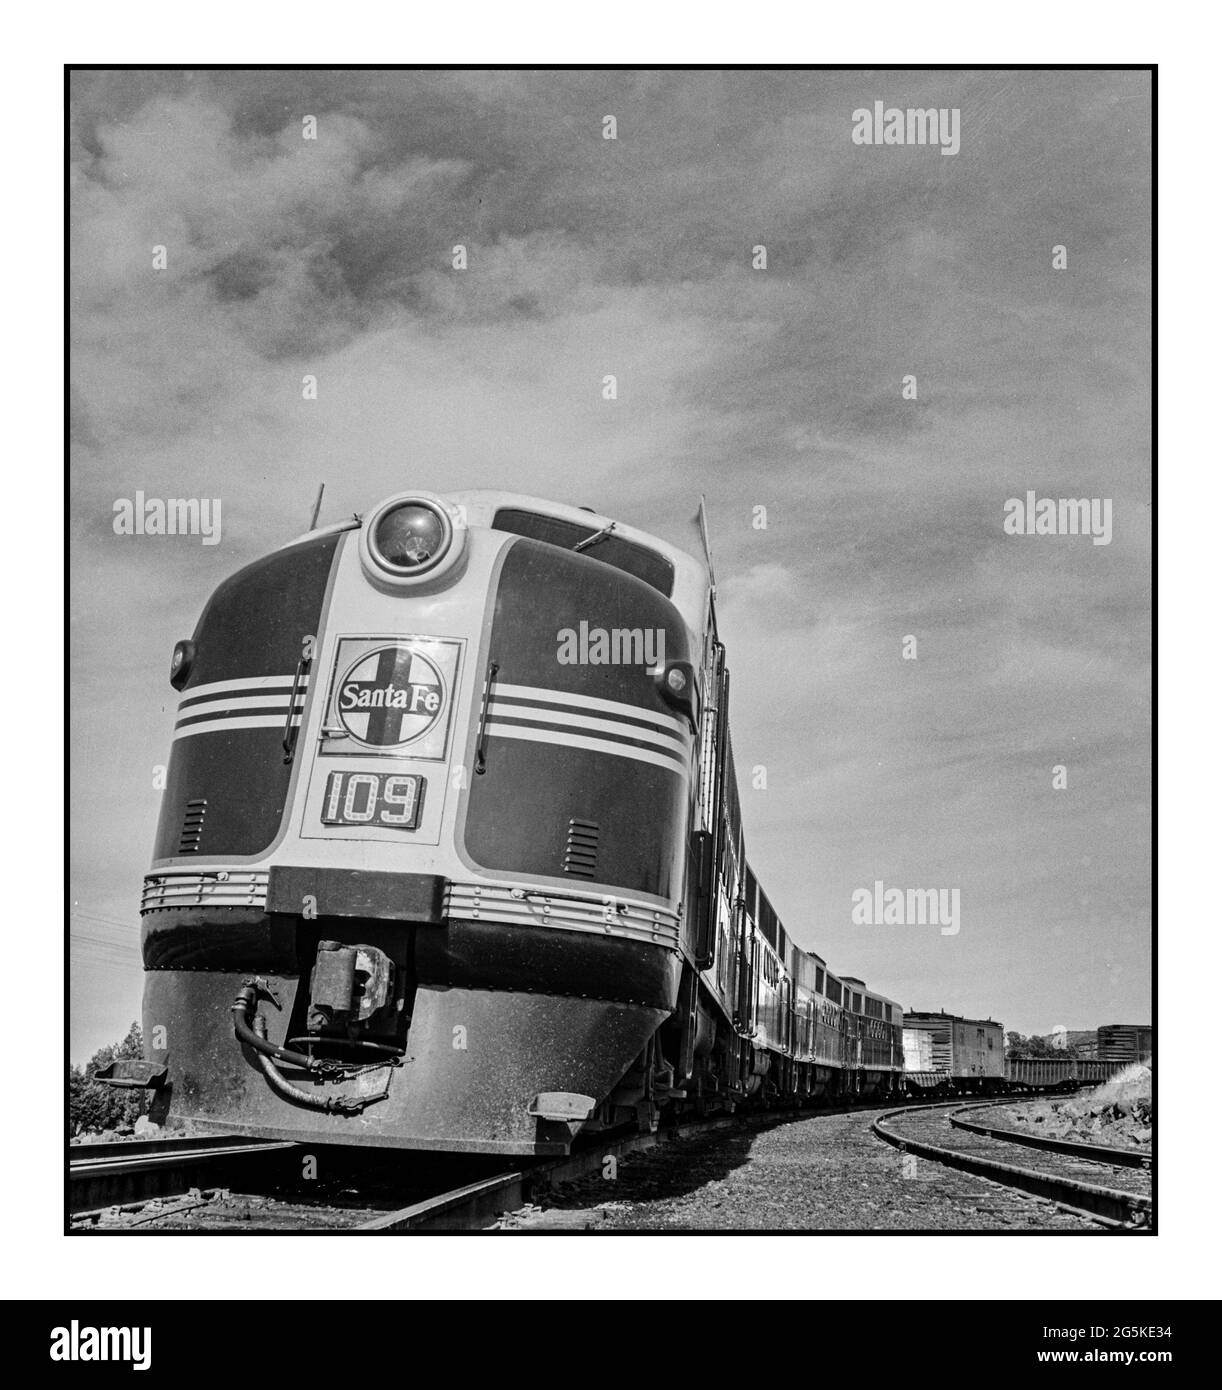 SANTA FE 40 locomotive à moteur ferroviaire Ash Fork, Arizona America USA. Un train de fret diesel sur l'Atchison, Topeka et Santa Fe Freight Railroad des années 1940 entre Winslow et Seligman, Arizona qui descend la montagne s'arrête à une voie d'évitement pour refroidir ses roues Jack Delano photographe - États-Unis--Arizona--Yavapai County--Ash Fork America USA Banque D'Images